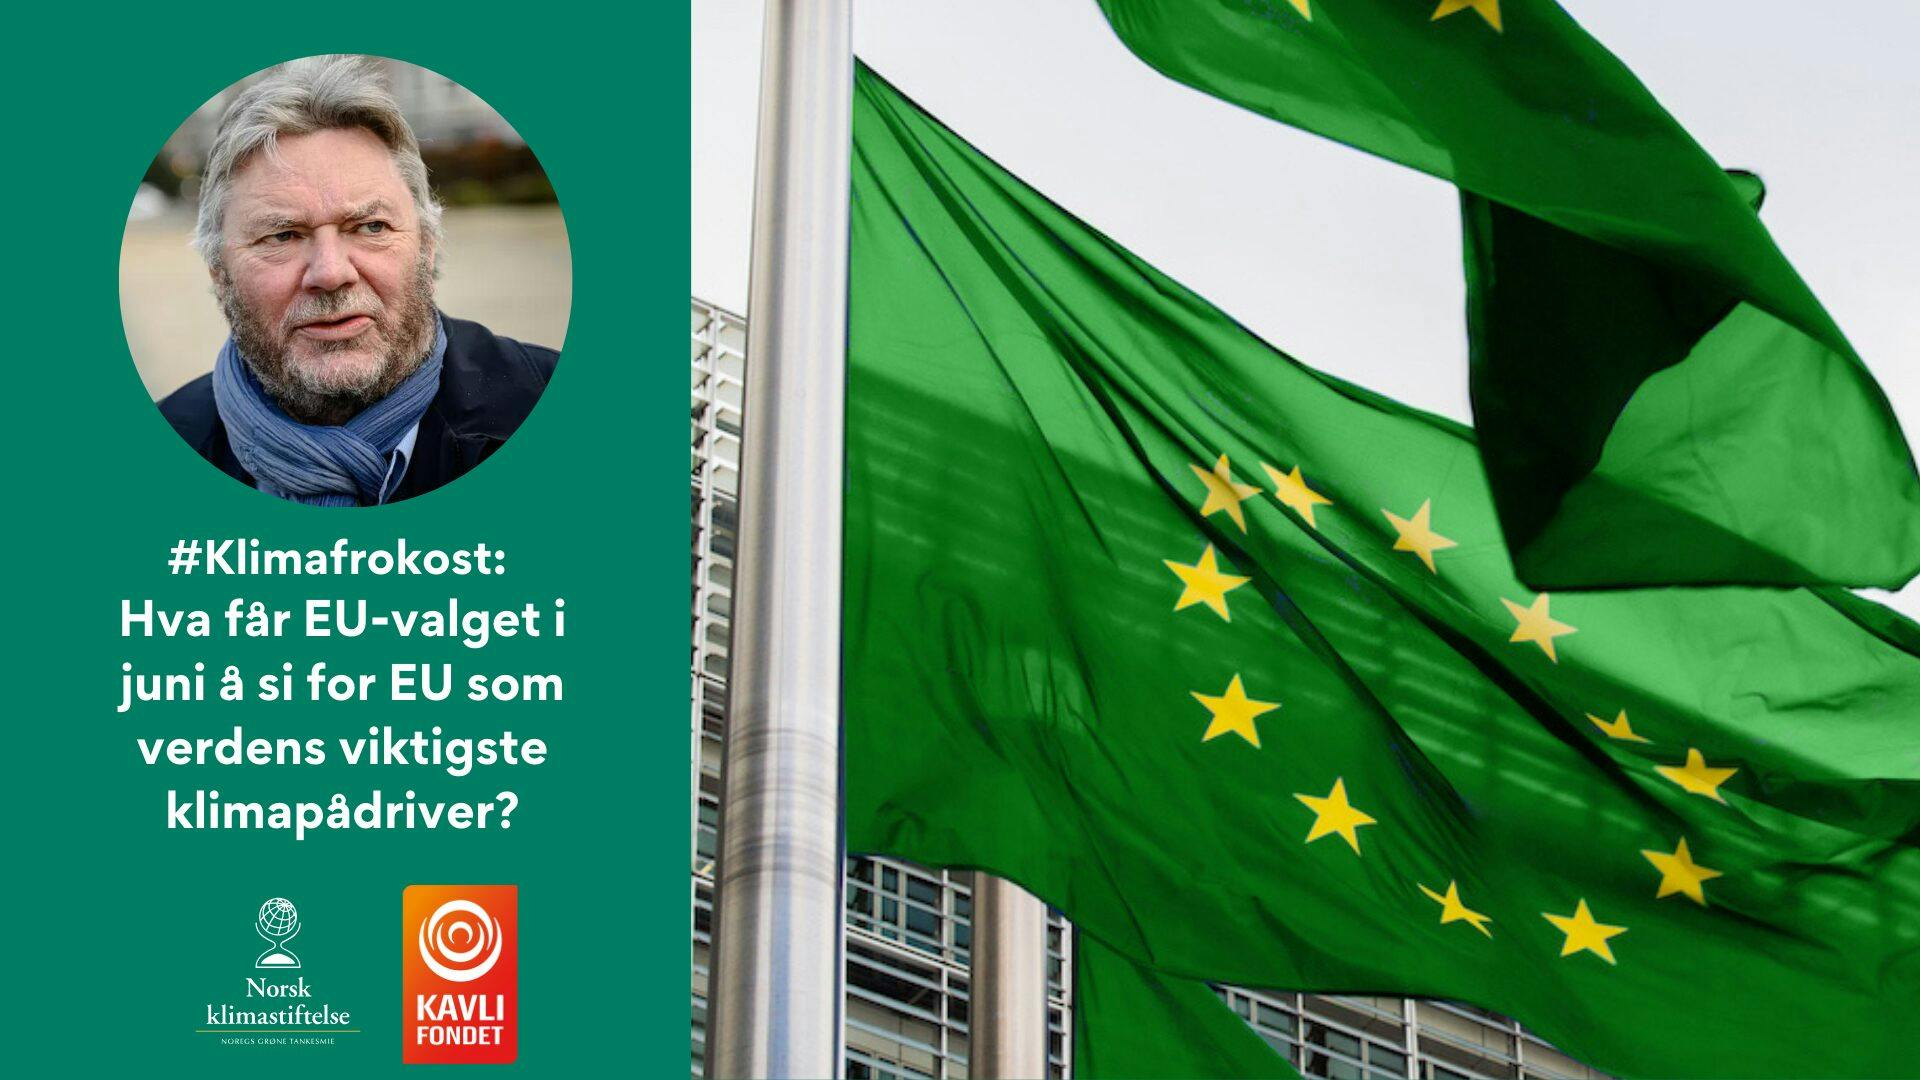 Et mannsbilde er avbildet ved siden av grønne flagg med gule stjerner og en tekst på norsk som diskuterer EU-valgets innvirkning på Europas rolle i klimahandlinger. Logoer til Norsk Klimastiftelse og Kavli Fondet sees.